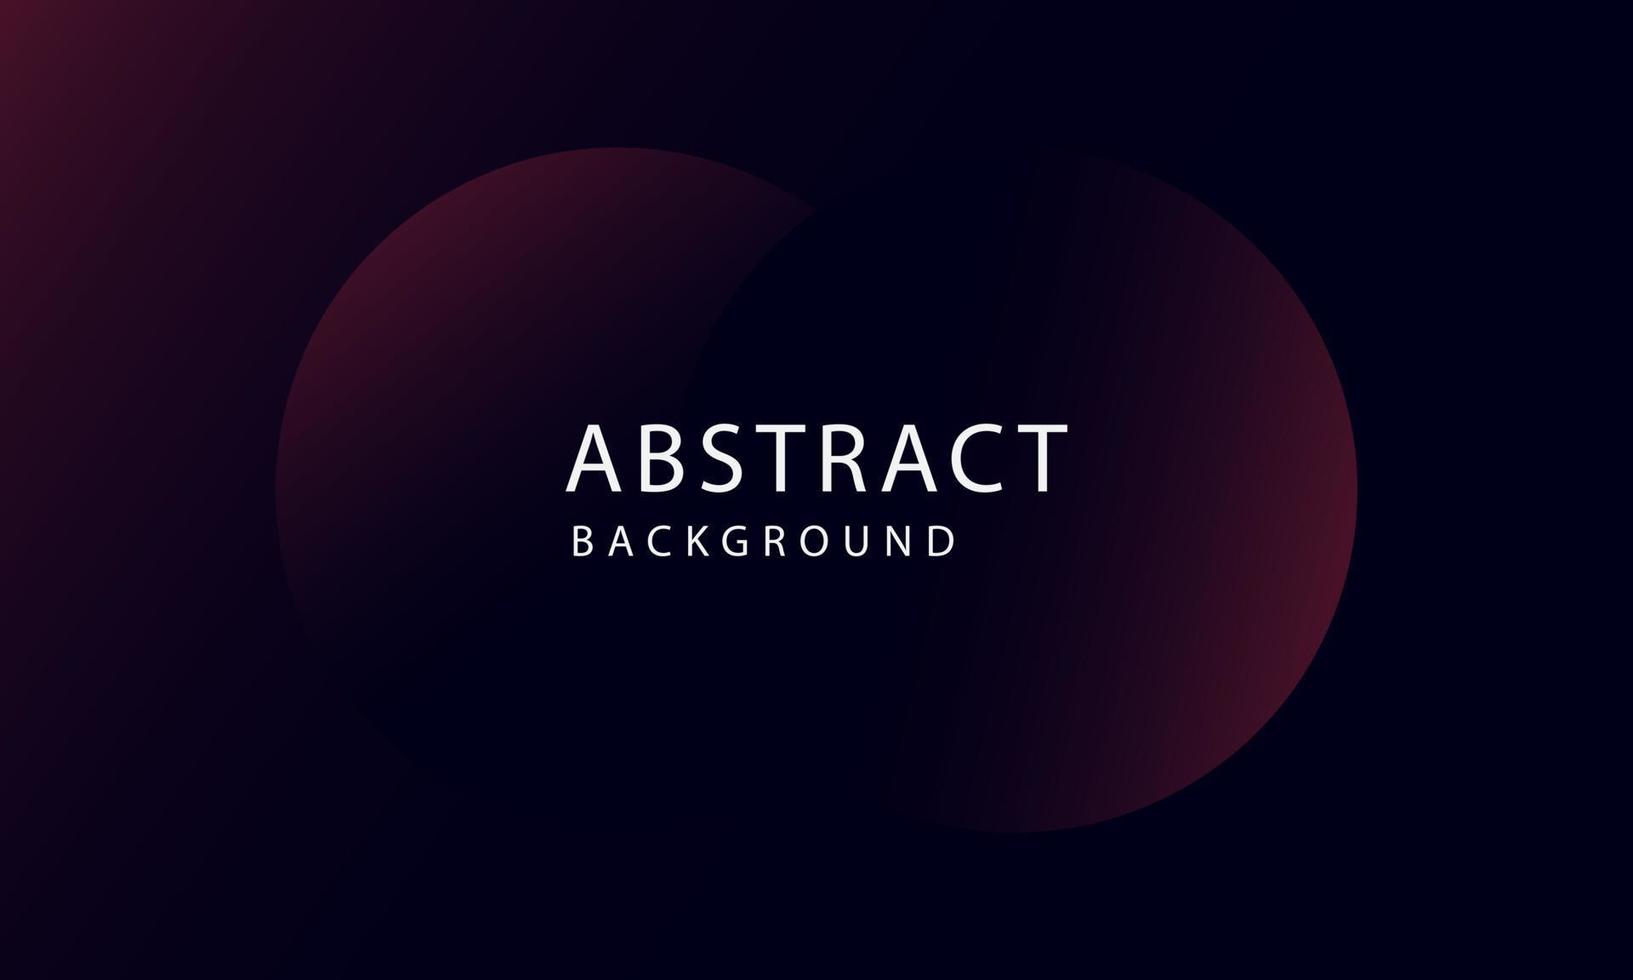 abstrakt mörklila bakgrundsvektor överlappande lager på mörkt utrymme för bakgrundsdesign. exklusiv tapetdesign för affisch, broschyr, presentation, hemsida etc. vektor